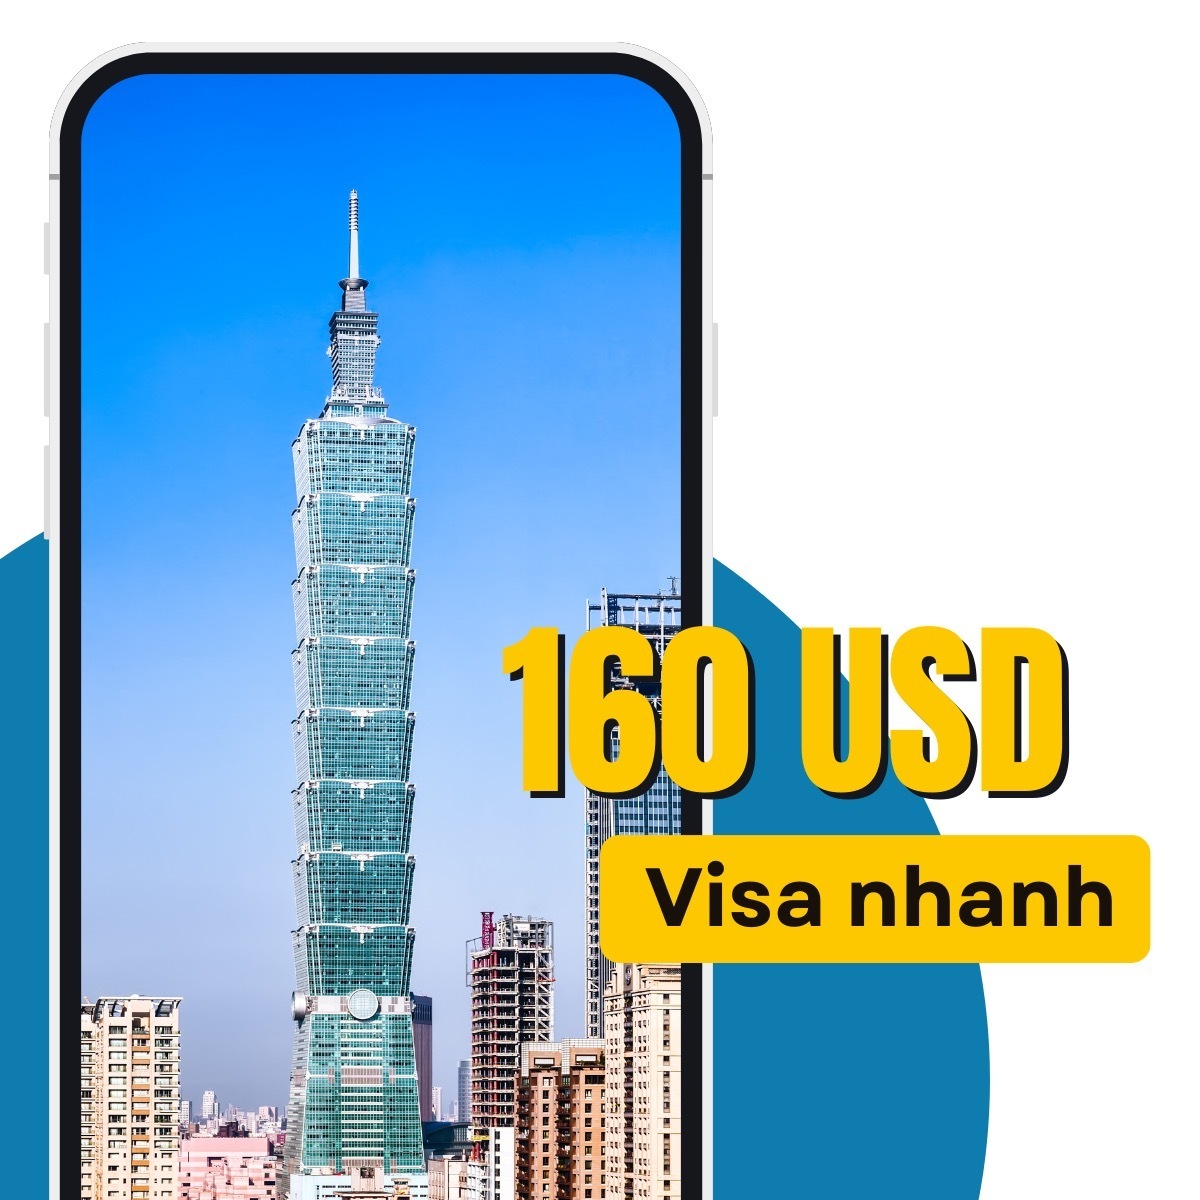 Dịch vụ hồ sơ xin visa thăm thân của Taiwan Diary